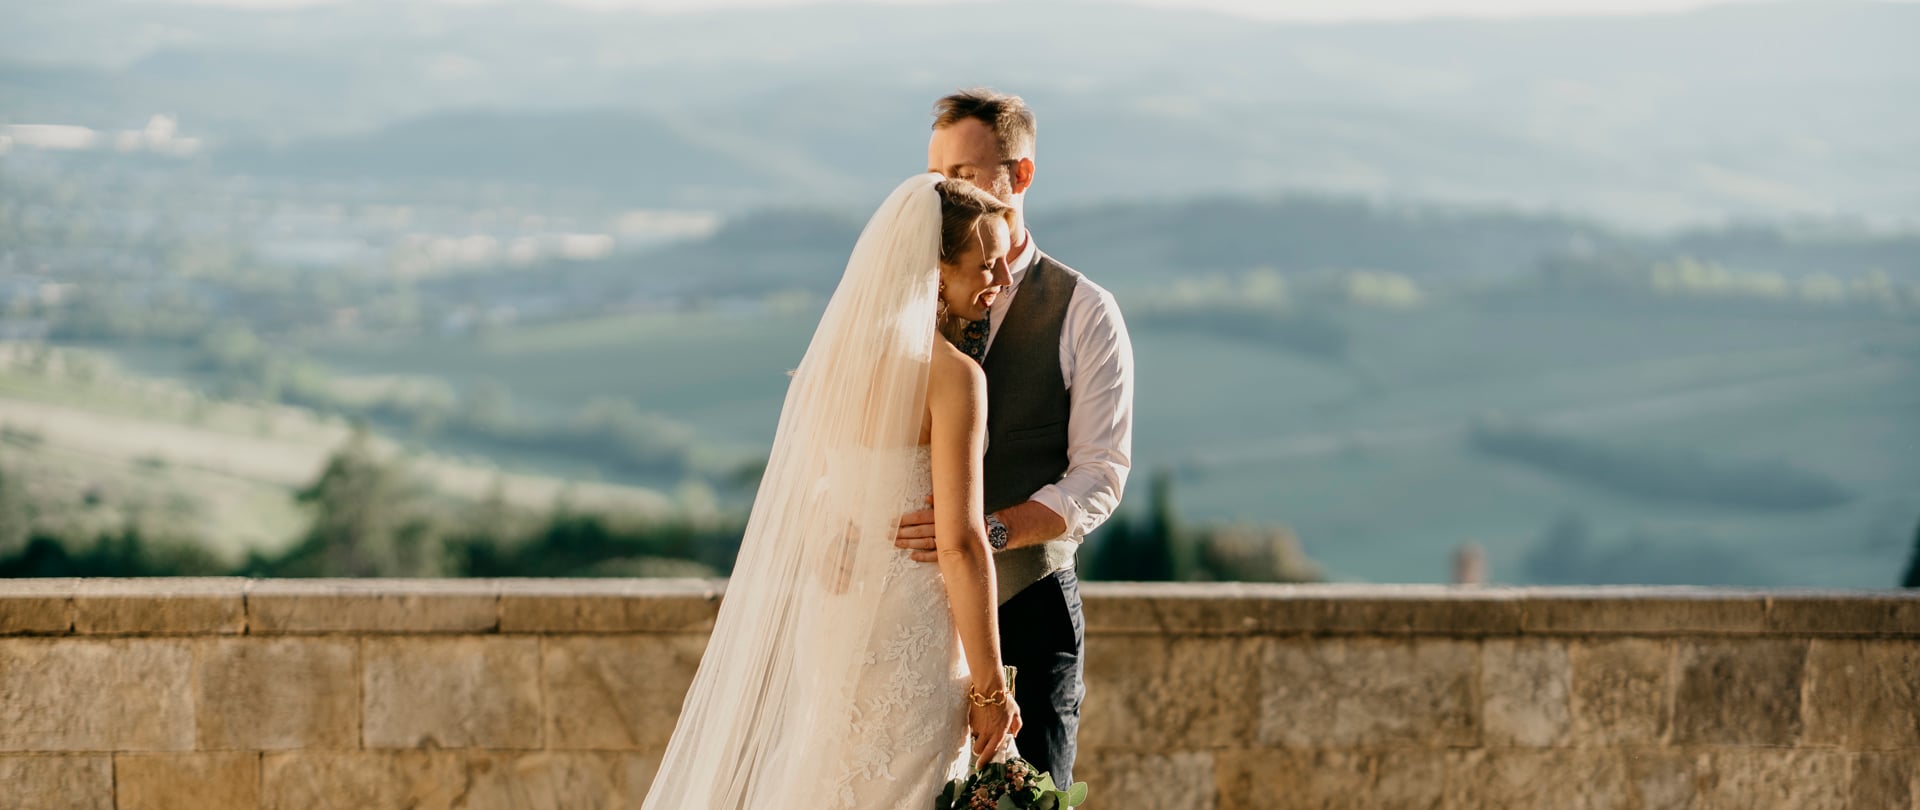 Klara & Oli Wedding Video Filmed atTuscany,Italy